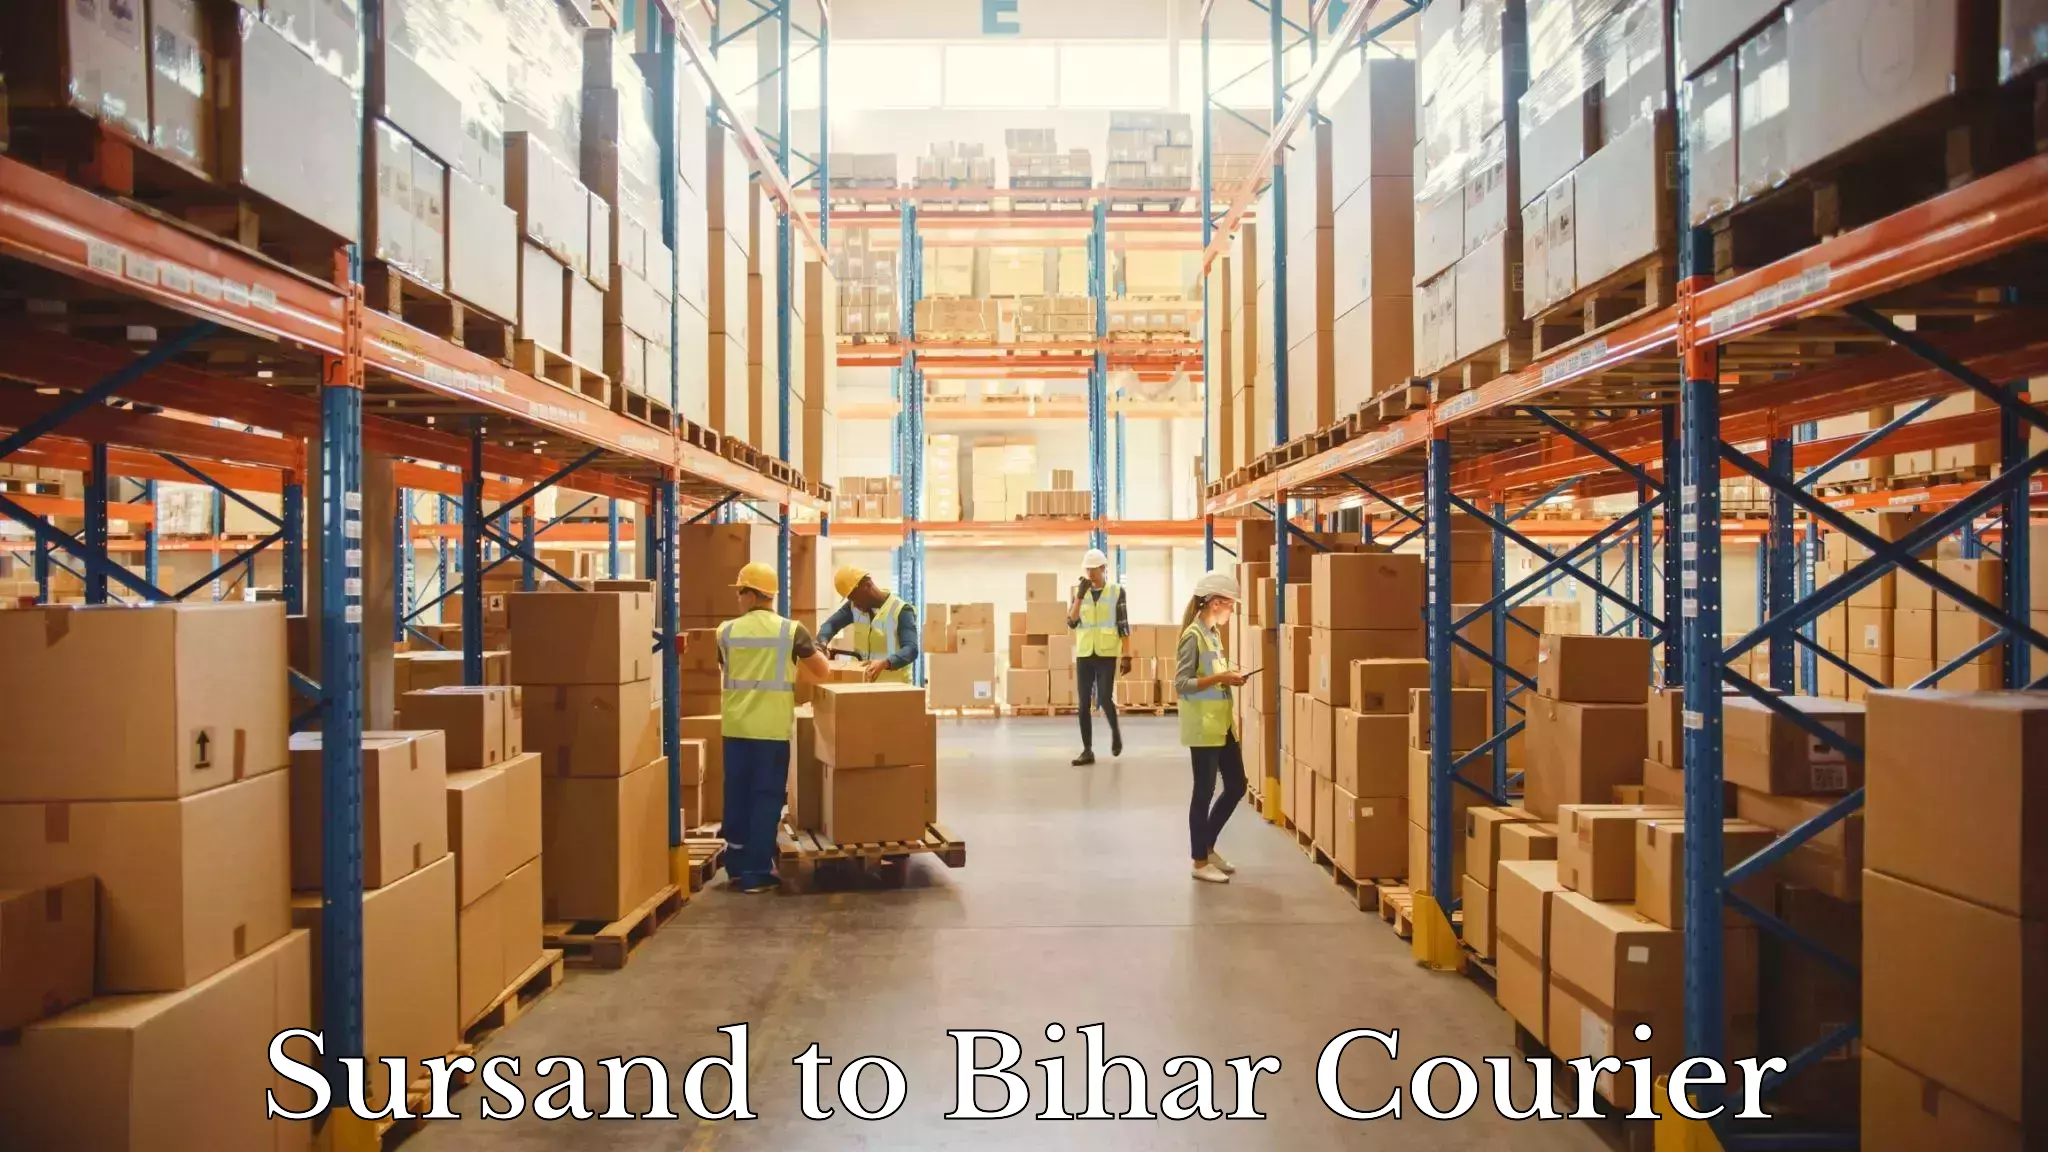 Customer-centric shipping Sursand to Bihar